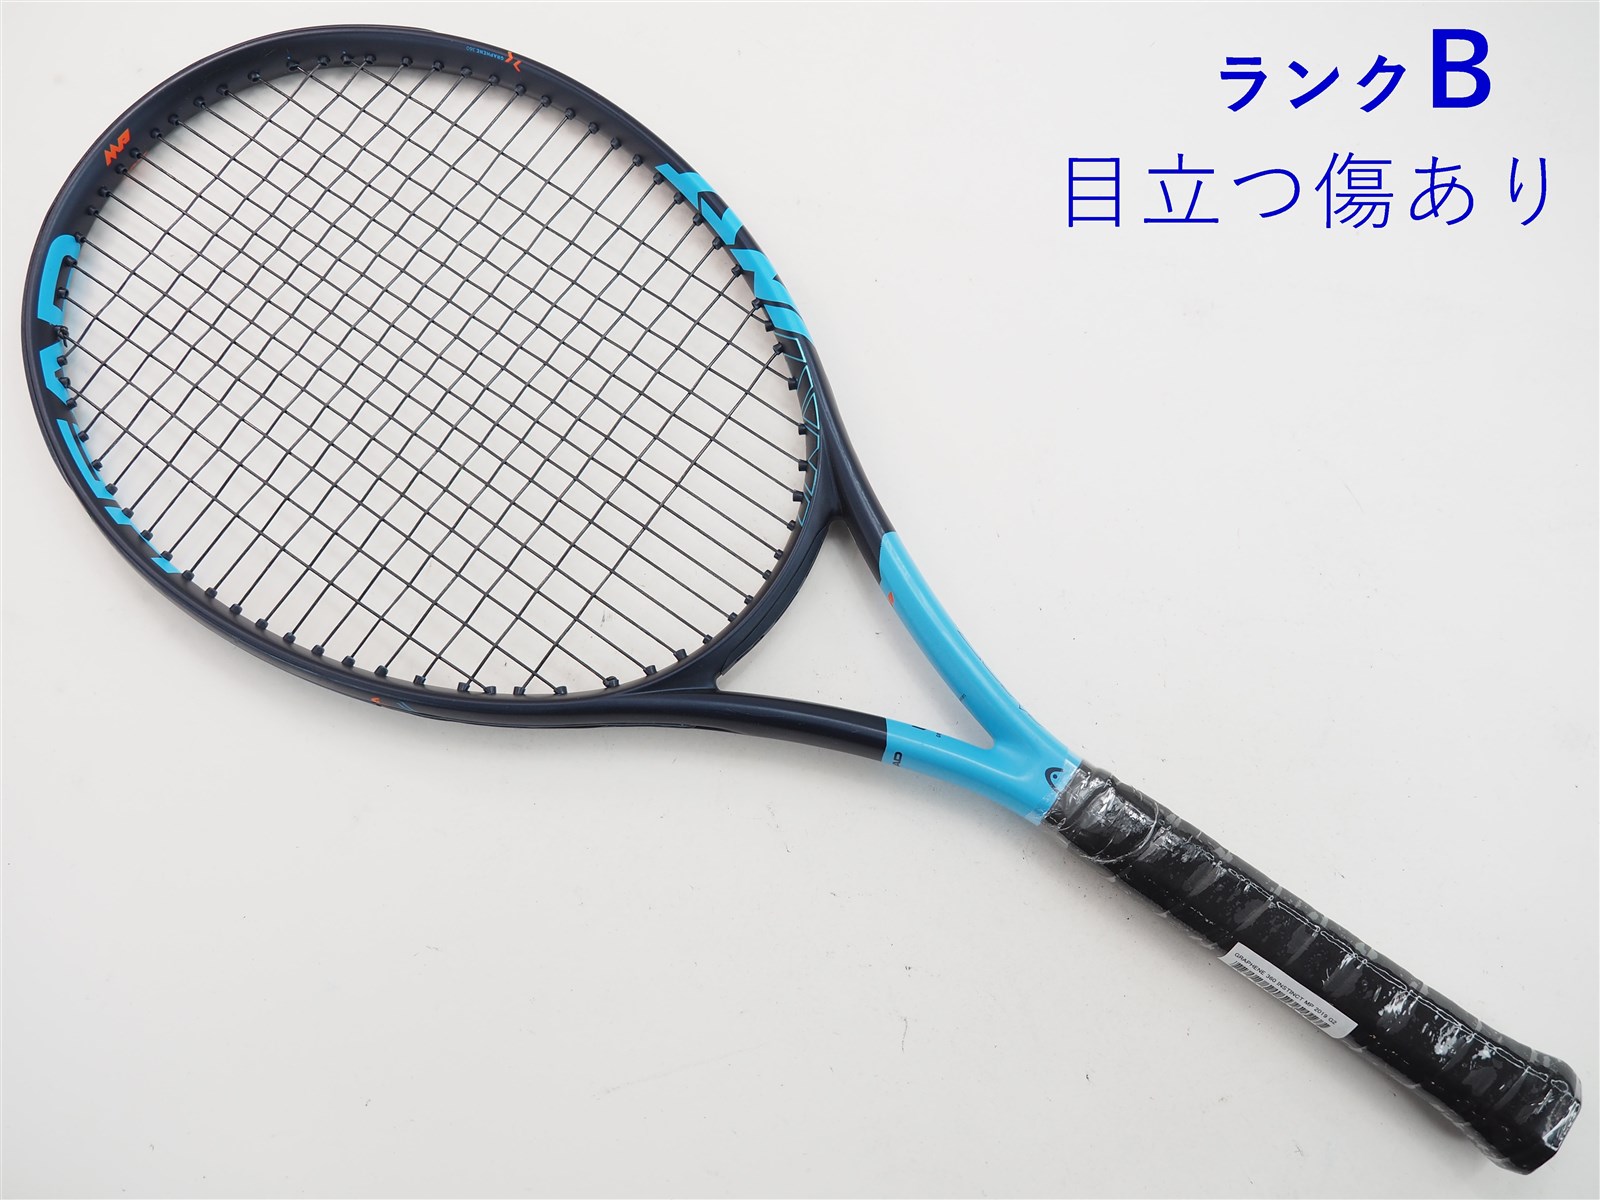 ヘッド INSTINCT MP テニスラケット - ラケット(硬式用)